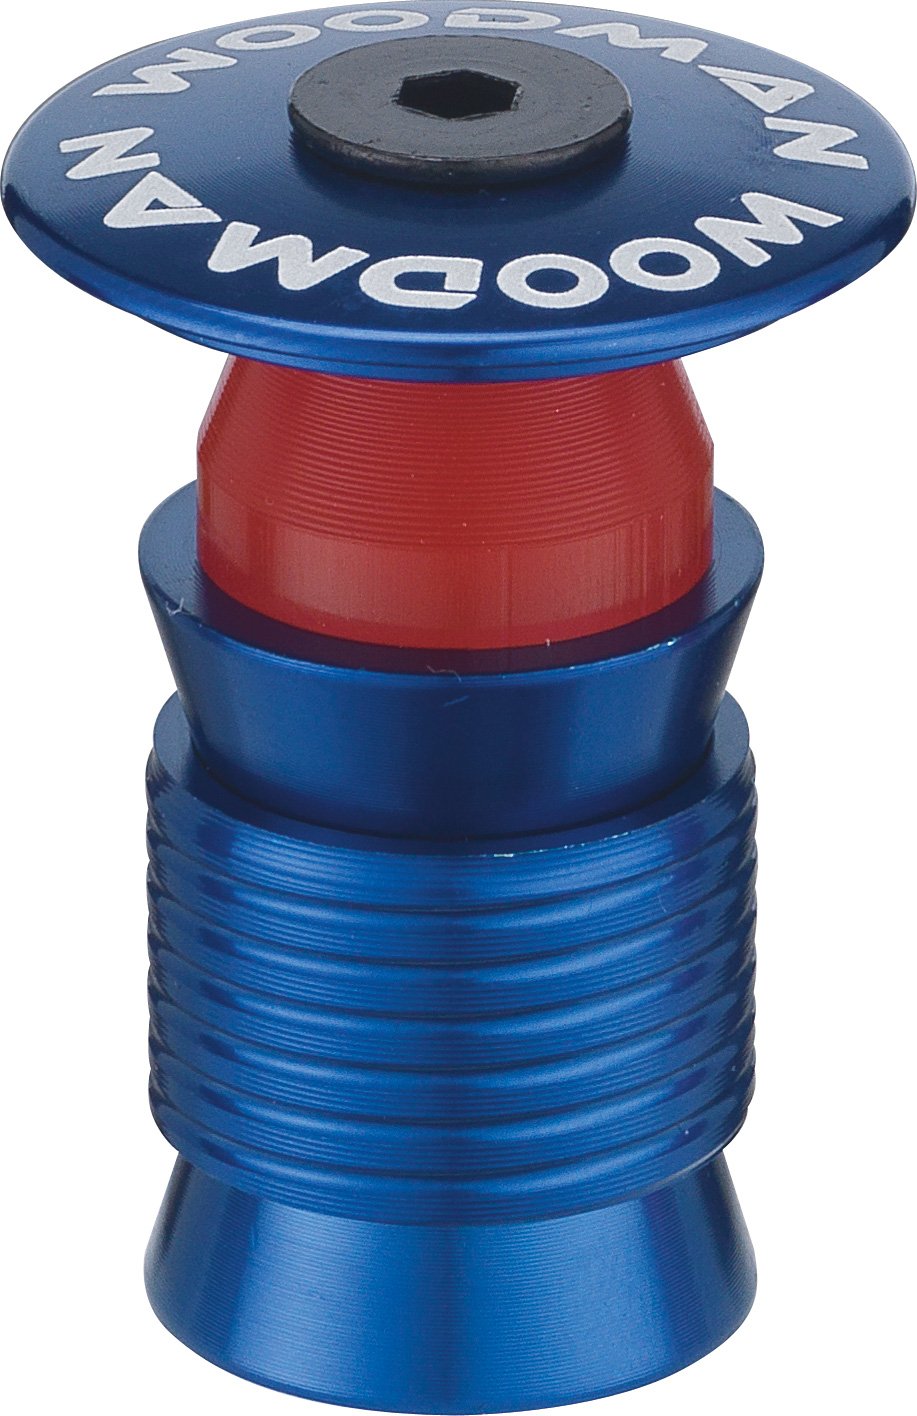 Woodman Capsule PH 1.1/8" Re-useable Ahead Plug Aqua Blue